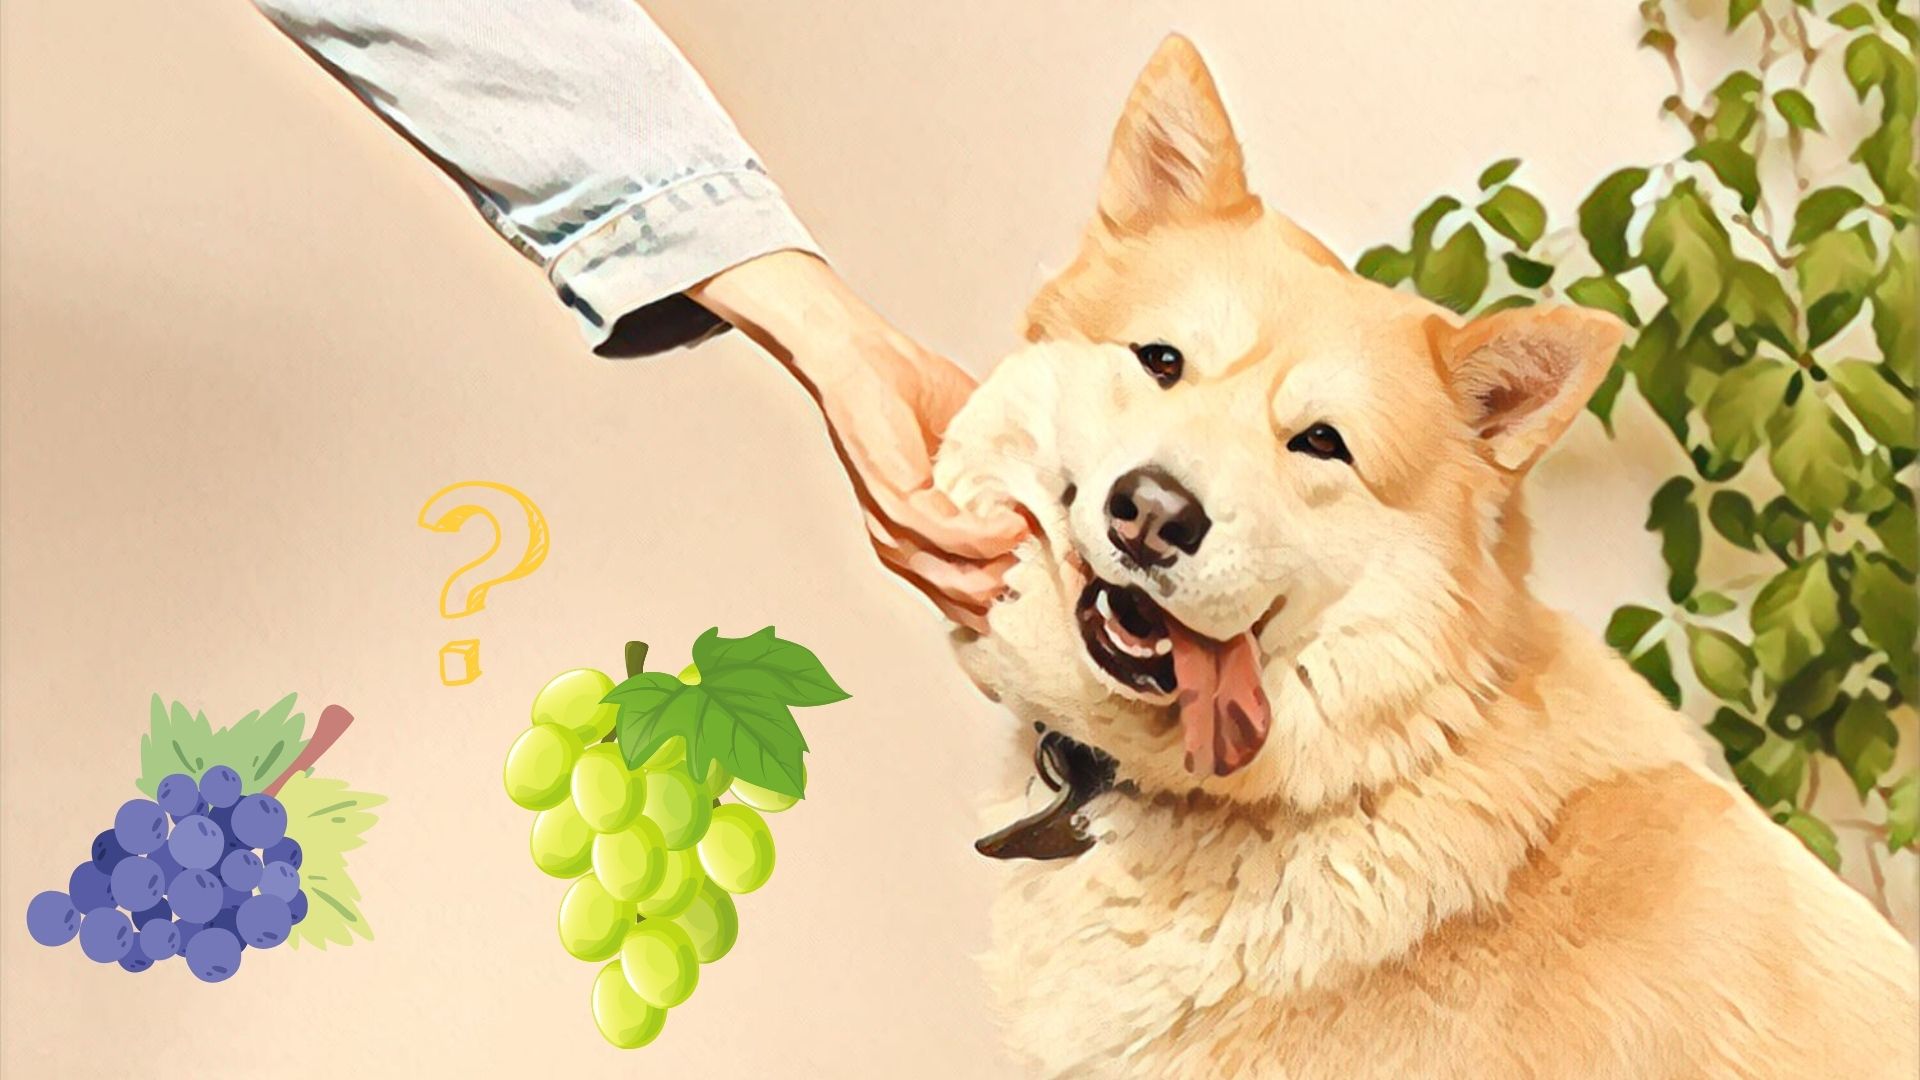 Kan hunde tåle vindruer? - hunde spise eller røde vindruer?